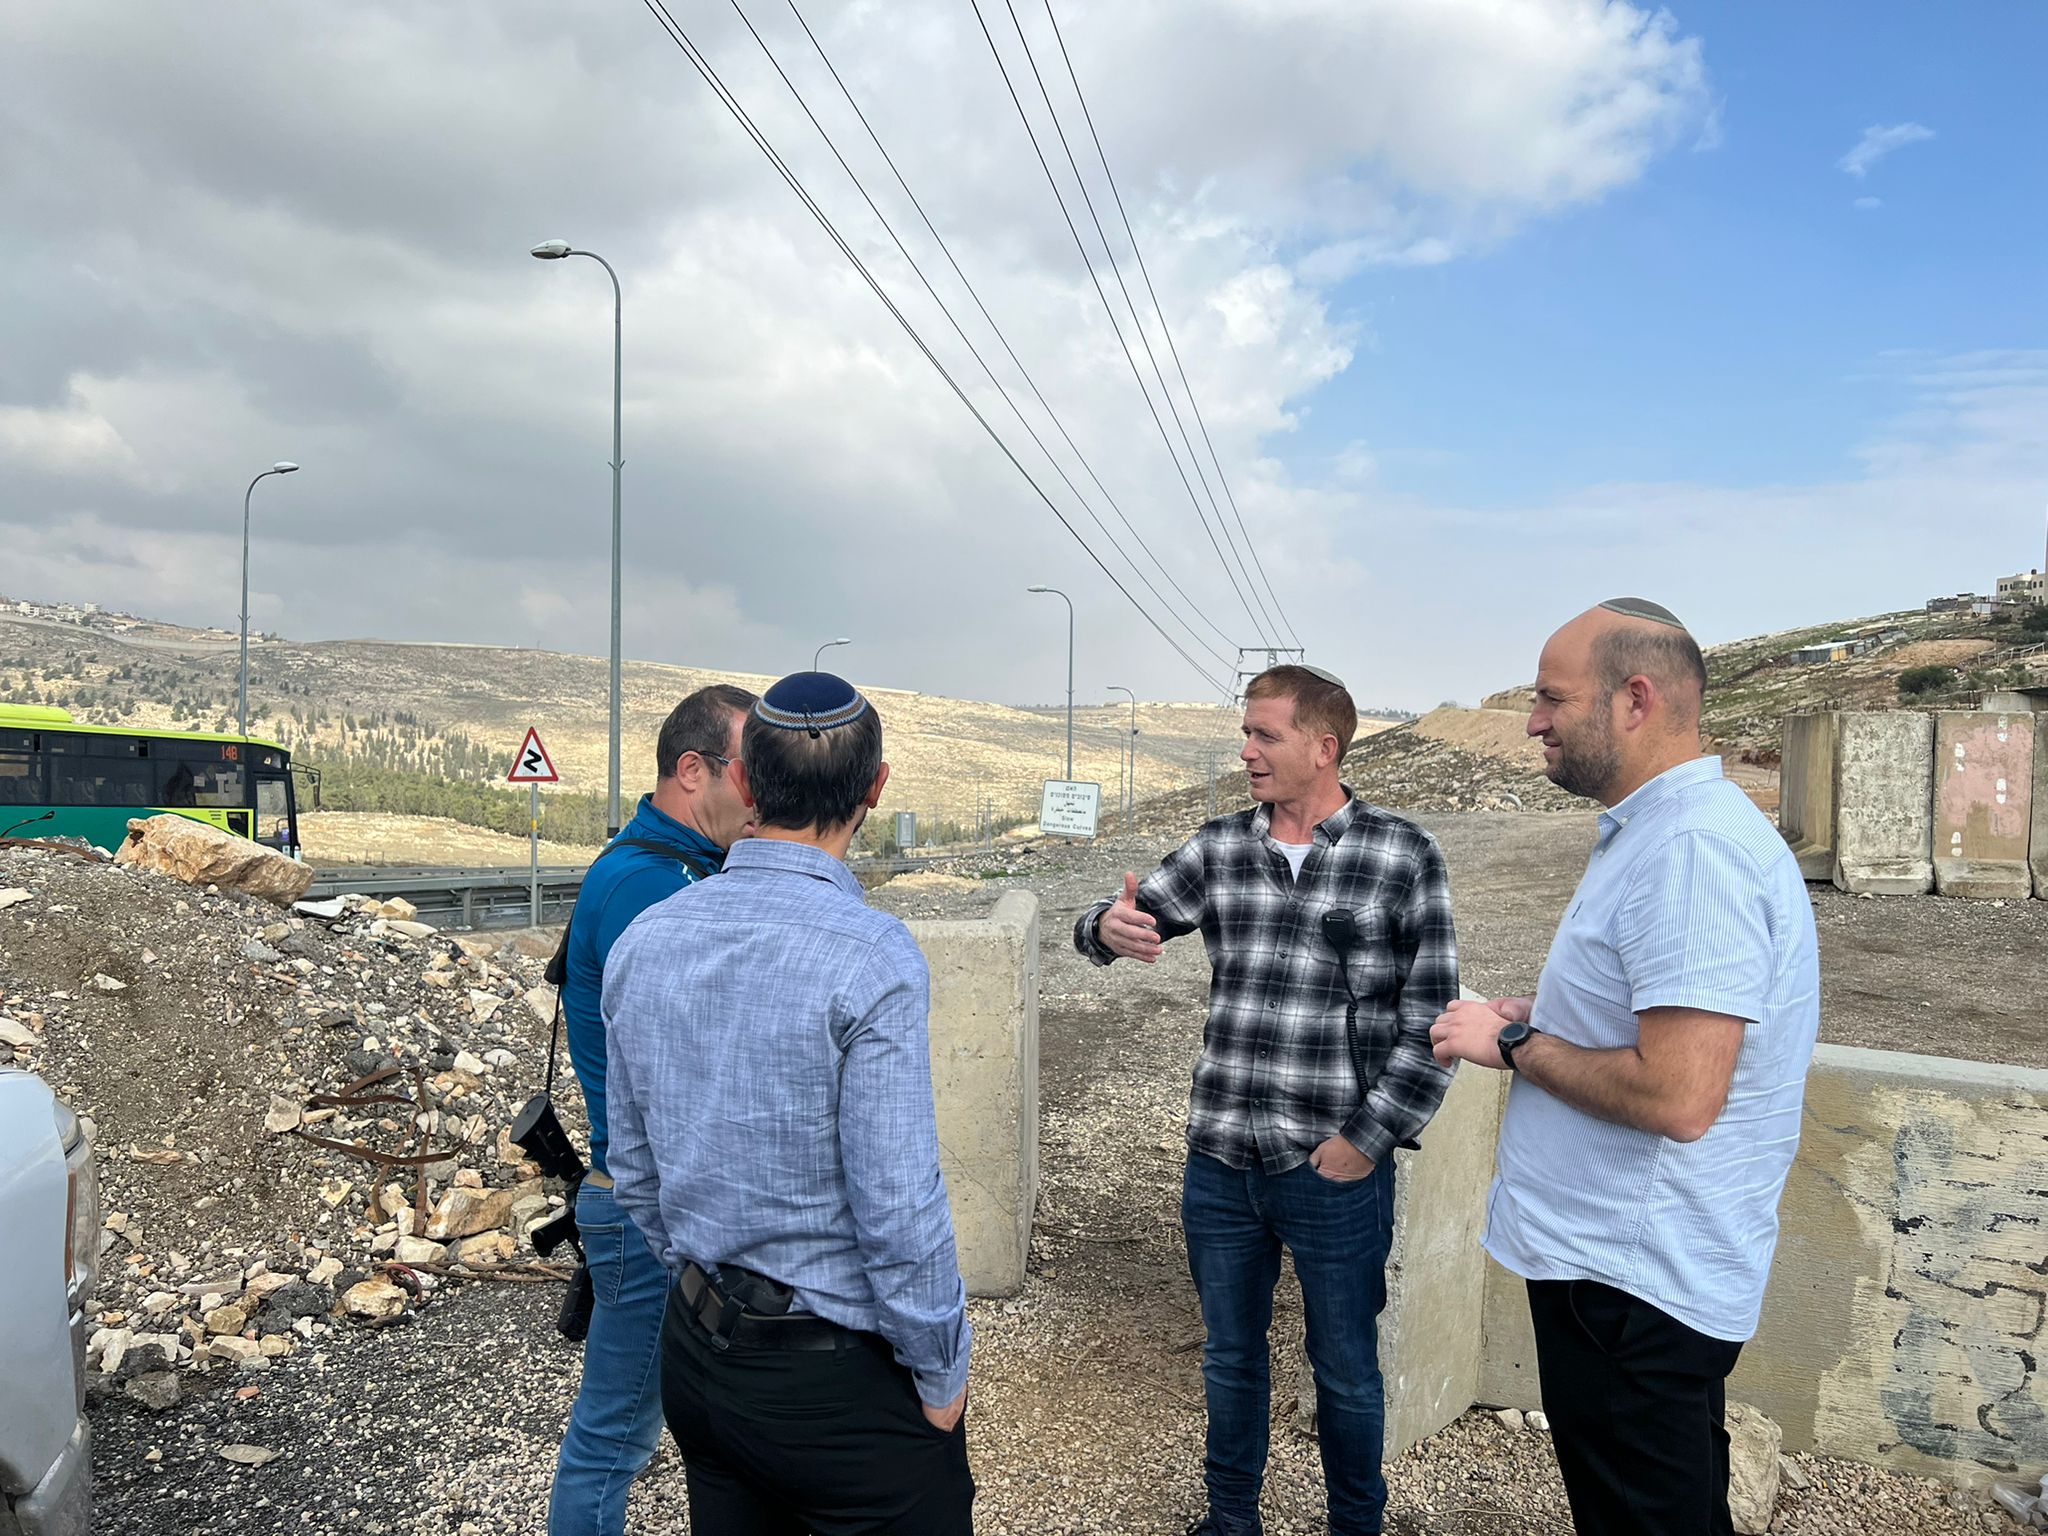 ראש מועצת בנימין ישראל גנץ: "אם זריקות האבנים ימשכו נעביר את פעילות המועצה לחיזמא״